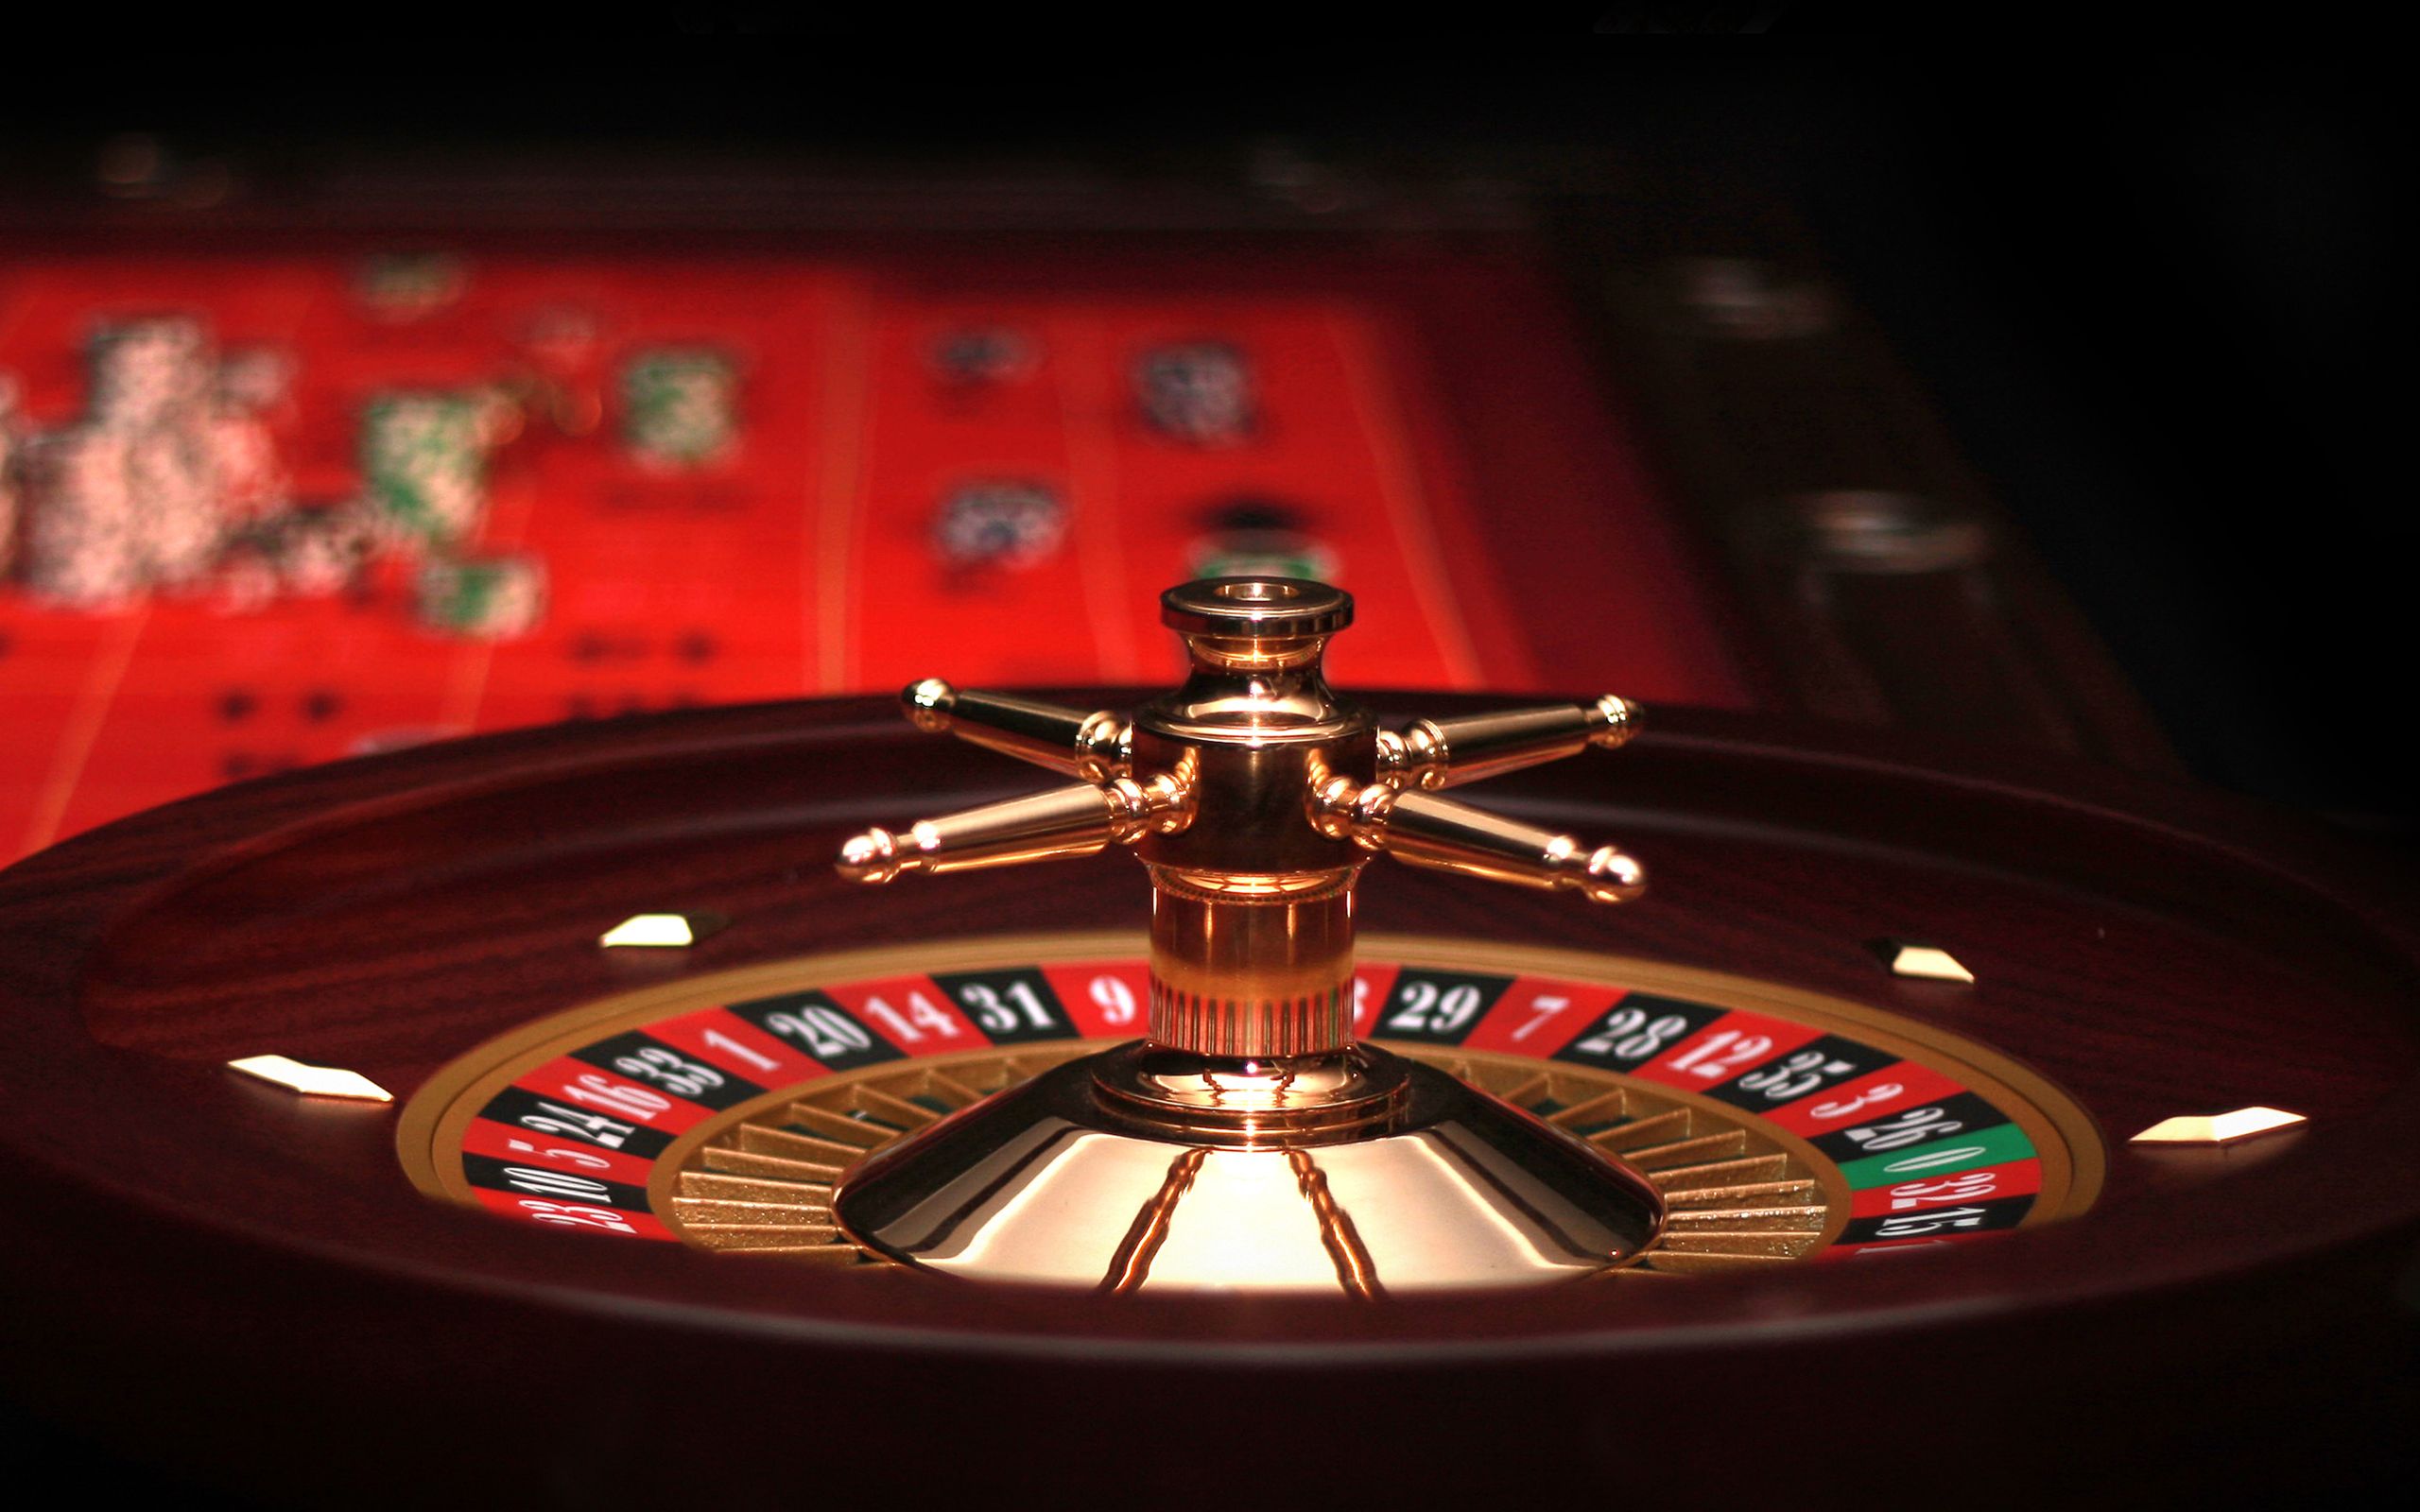 Melhor slot machine de bitcoin casino de diamantes bitcoin